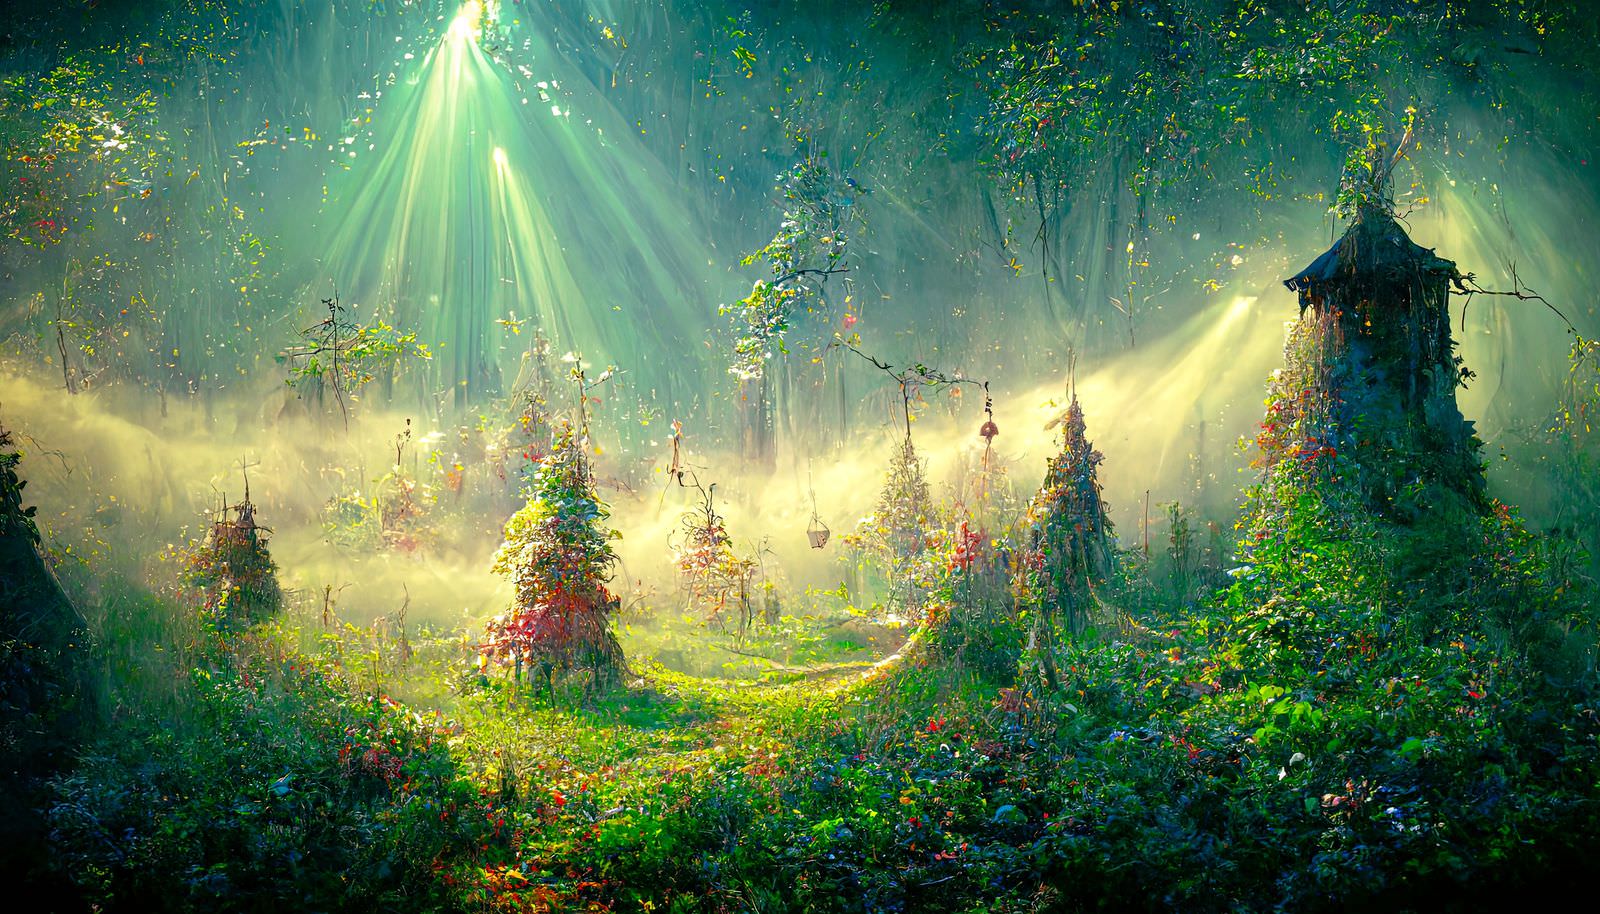 「光が差し込む不思議な森」の写真